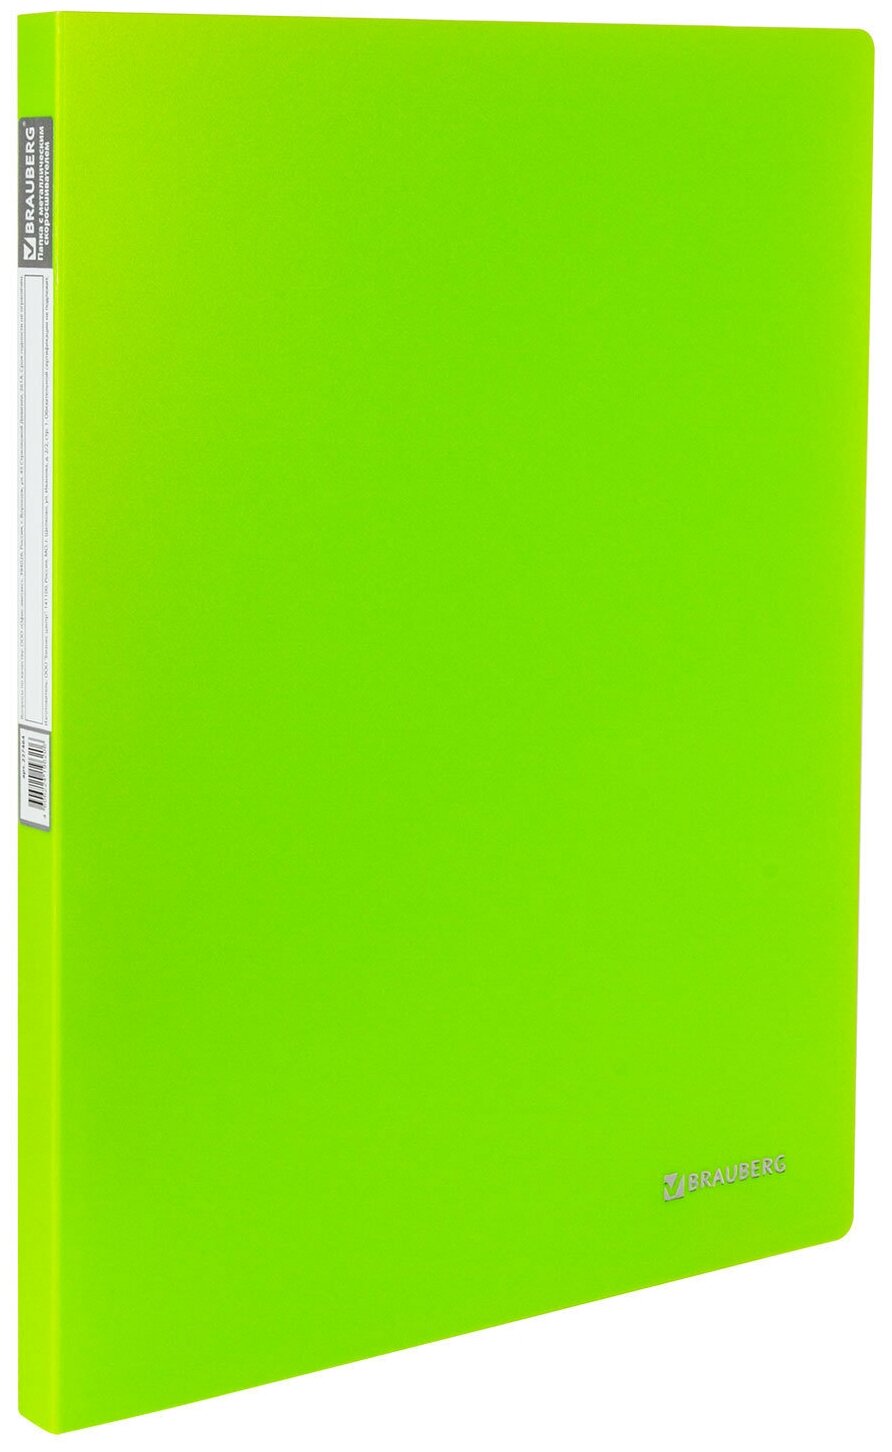 Папка с металлическим скоросшивателем и внутренним карманом BRAUBERG "Neon", 16 мм, зеленая, до 100 листов, 0,7 мм, 227464 - 1 шт.